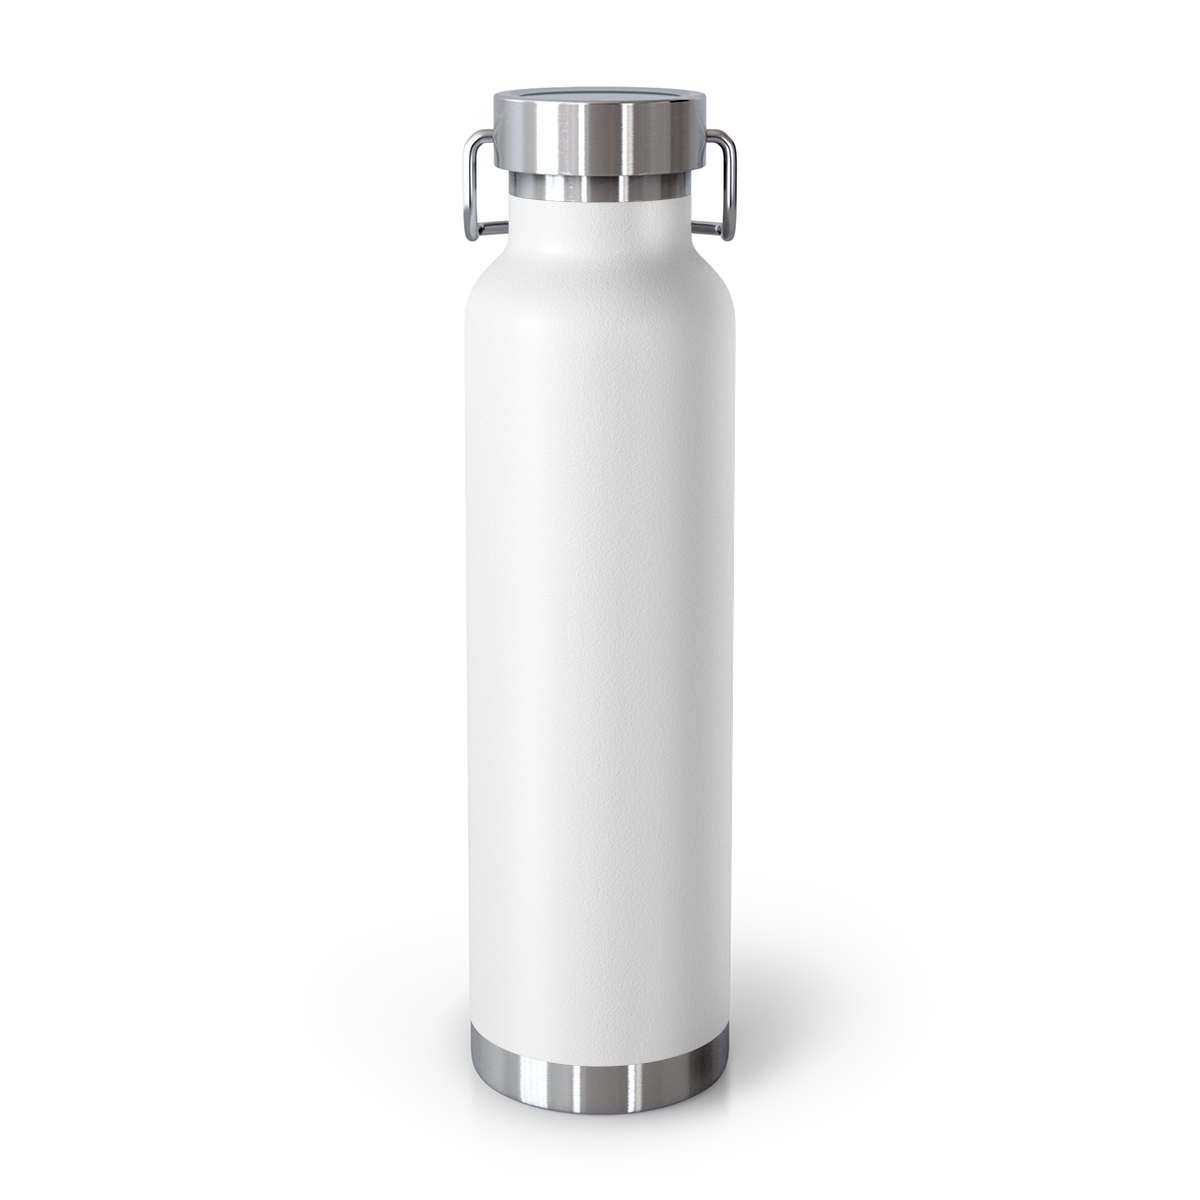 K7 22oz Stainless Steel Water Bottle - White - KAP7 International